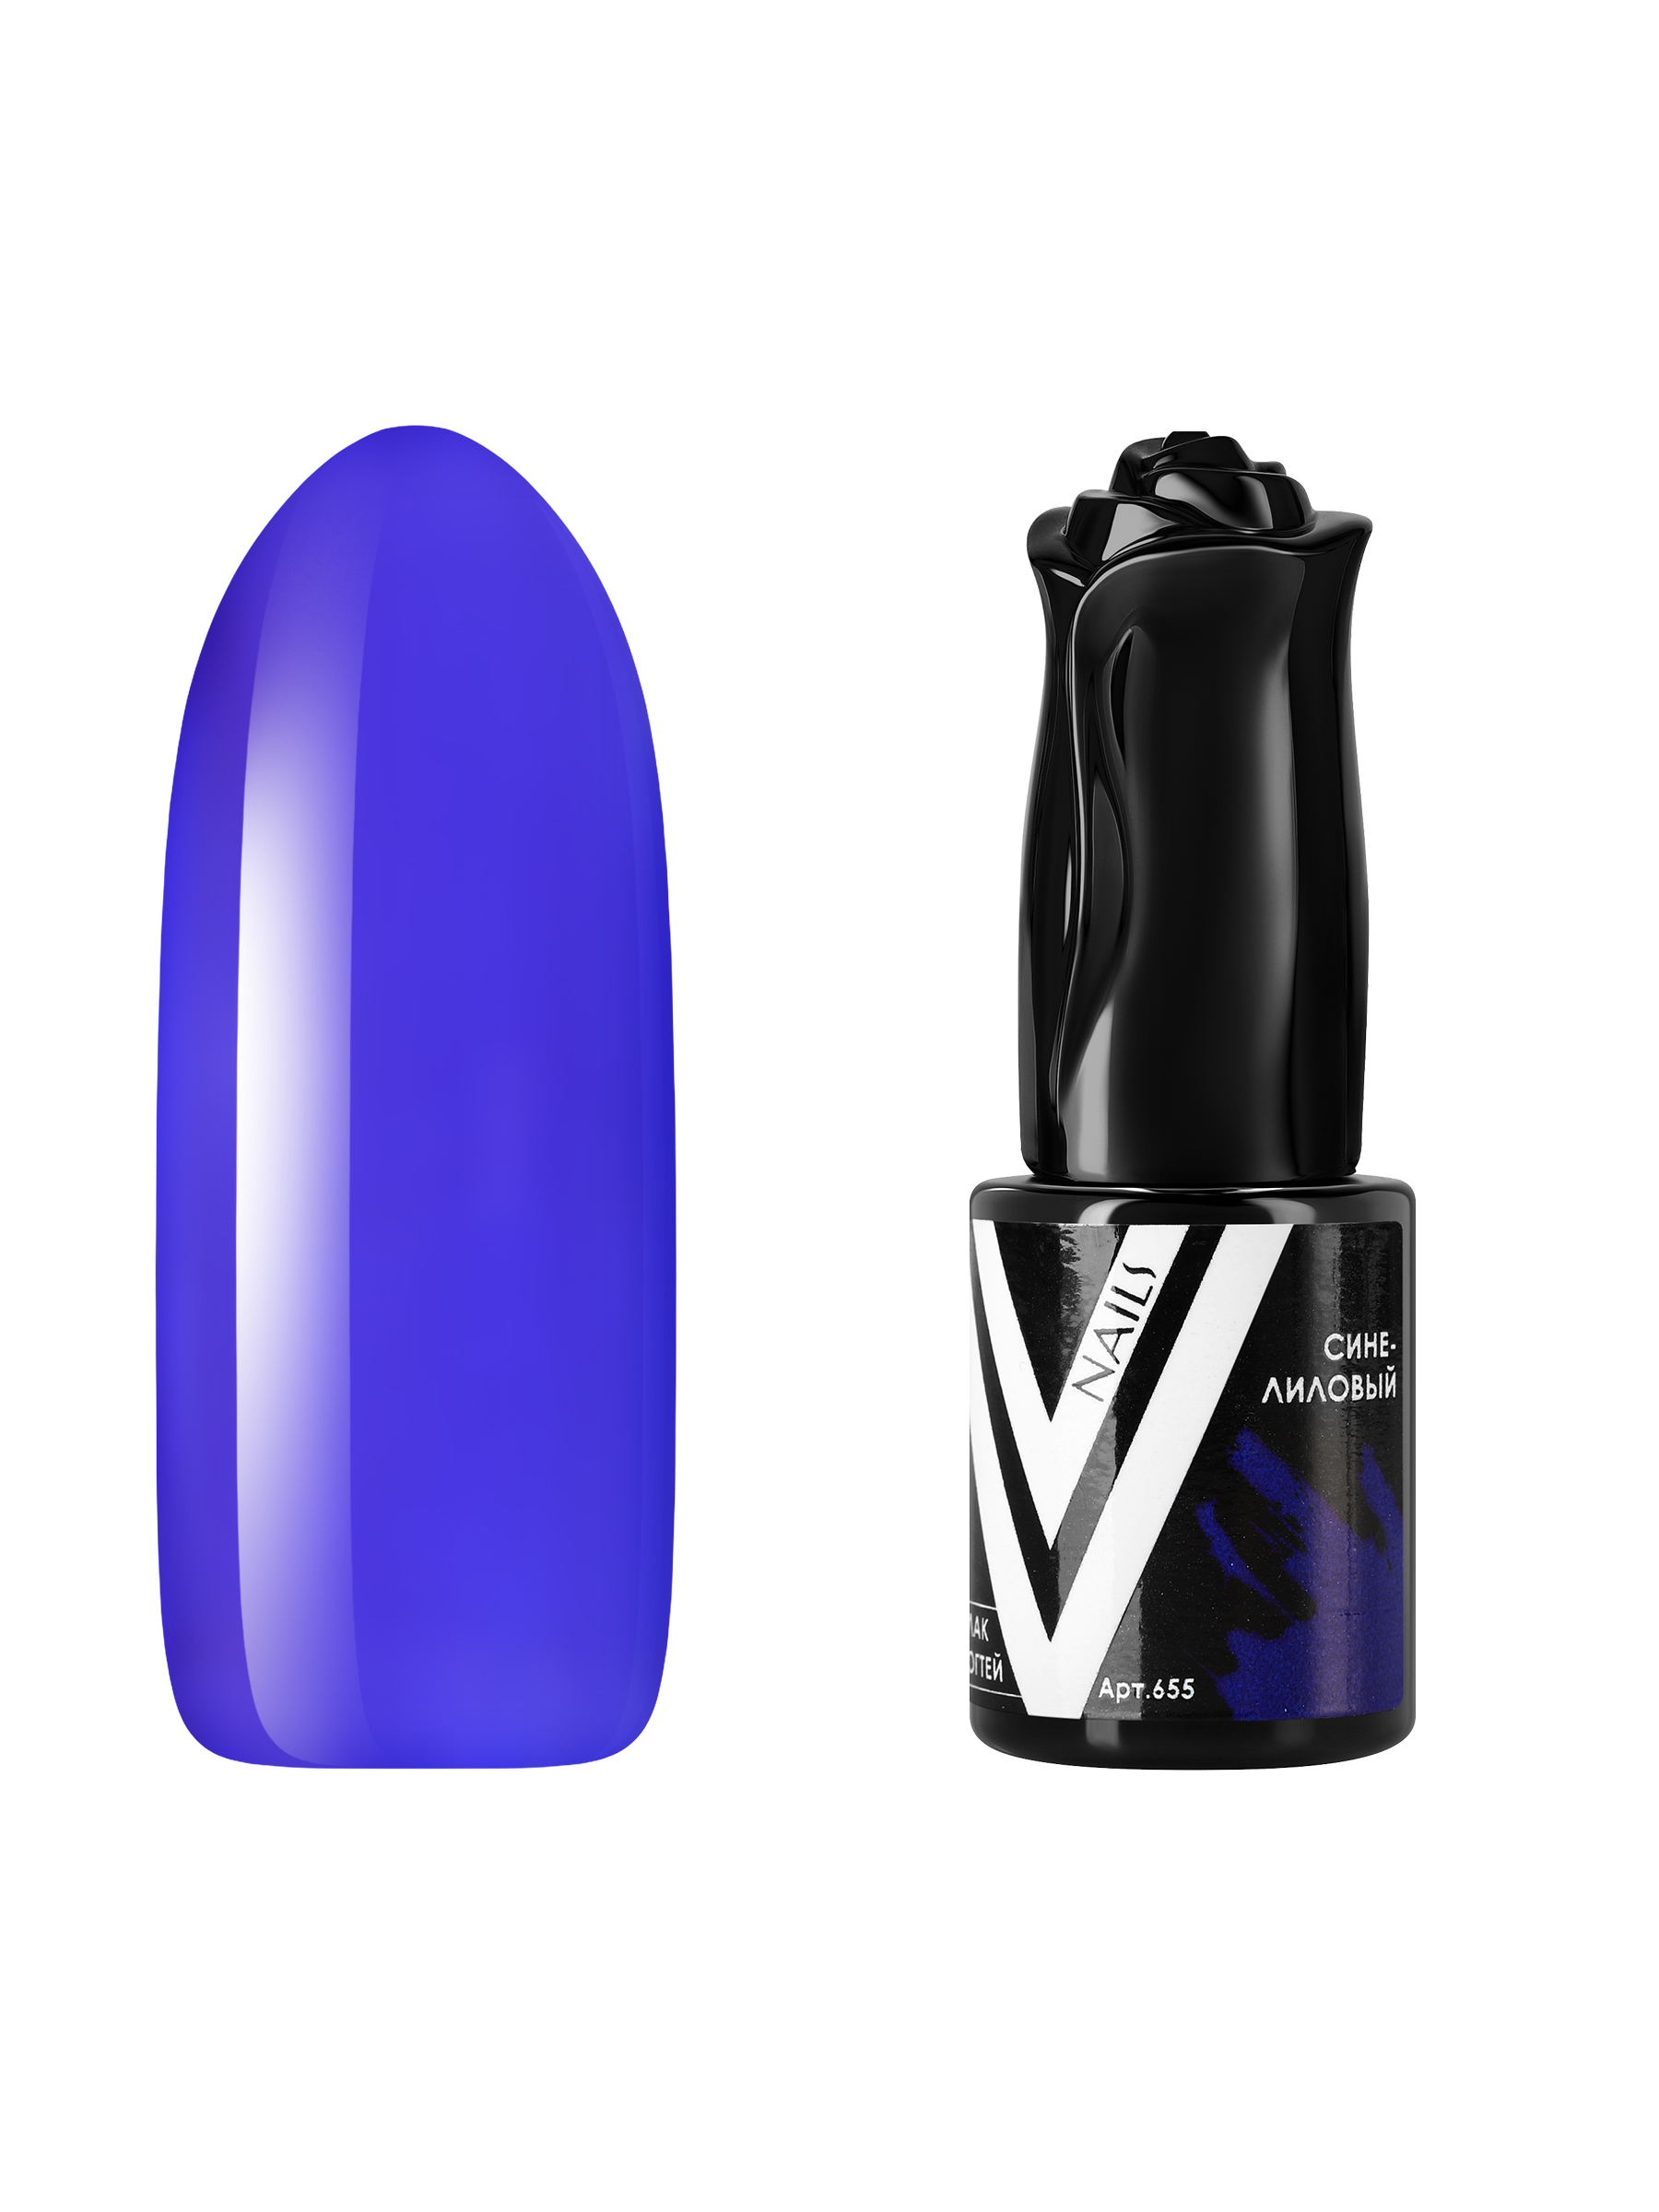 Гель-лак витражный Vogue Nails для аквариумного дизайна прозрачный фиолетовый синий, 10 мл аквариумный комплекс biorb cube 60 mcr бесшовный прозрачный 60л